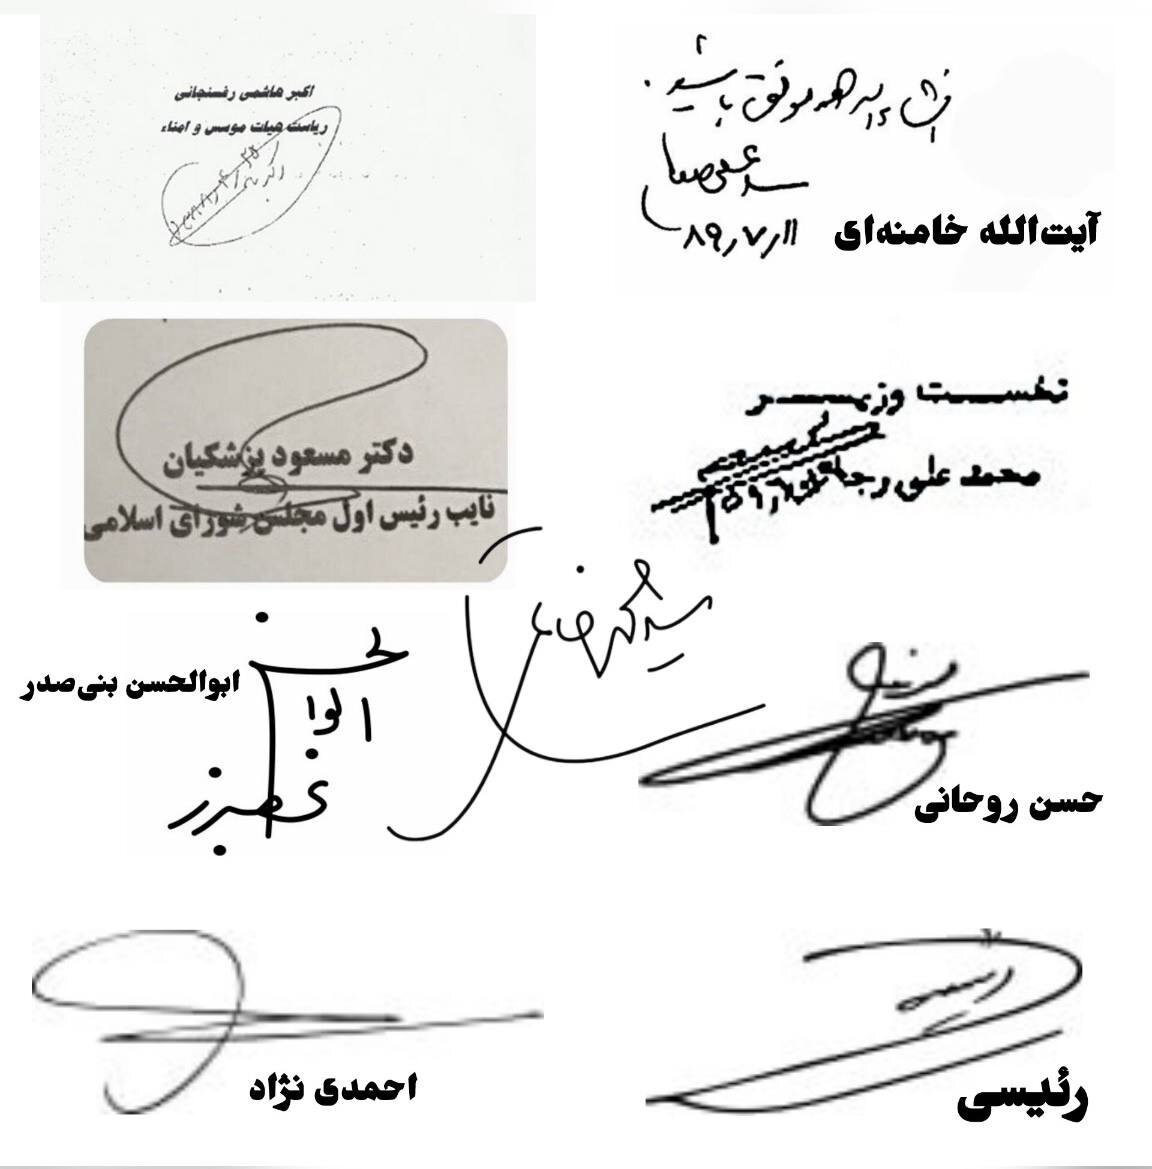 تصویری از امضاهای 9 رئیس جمهوری ایران